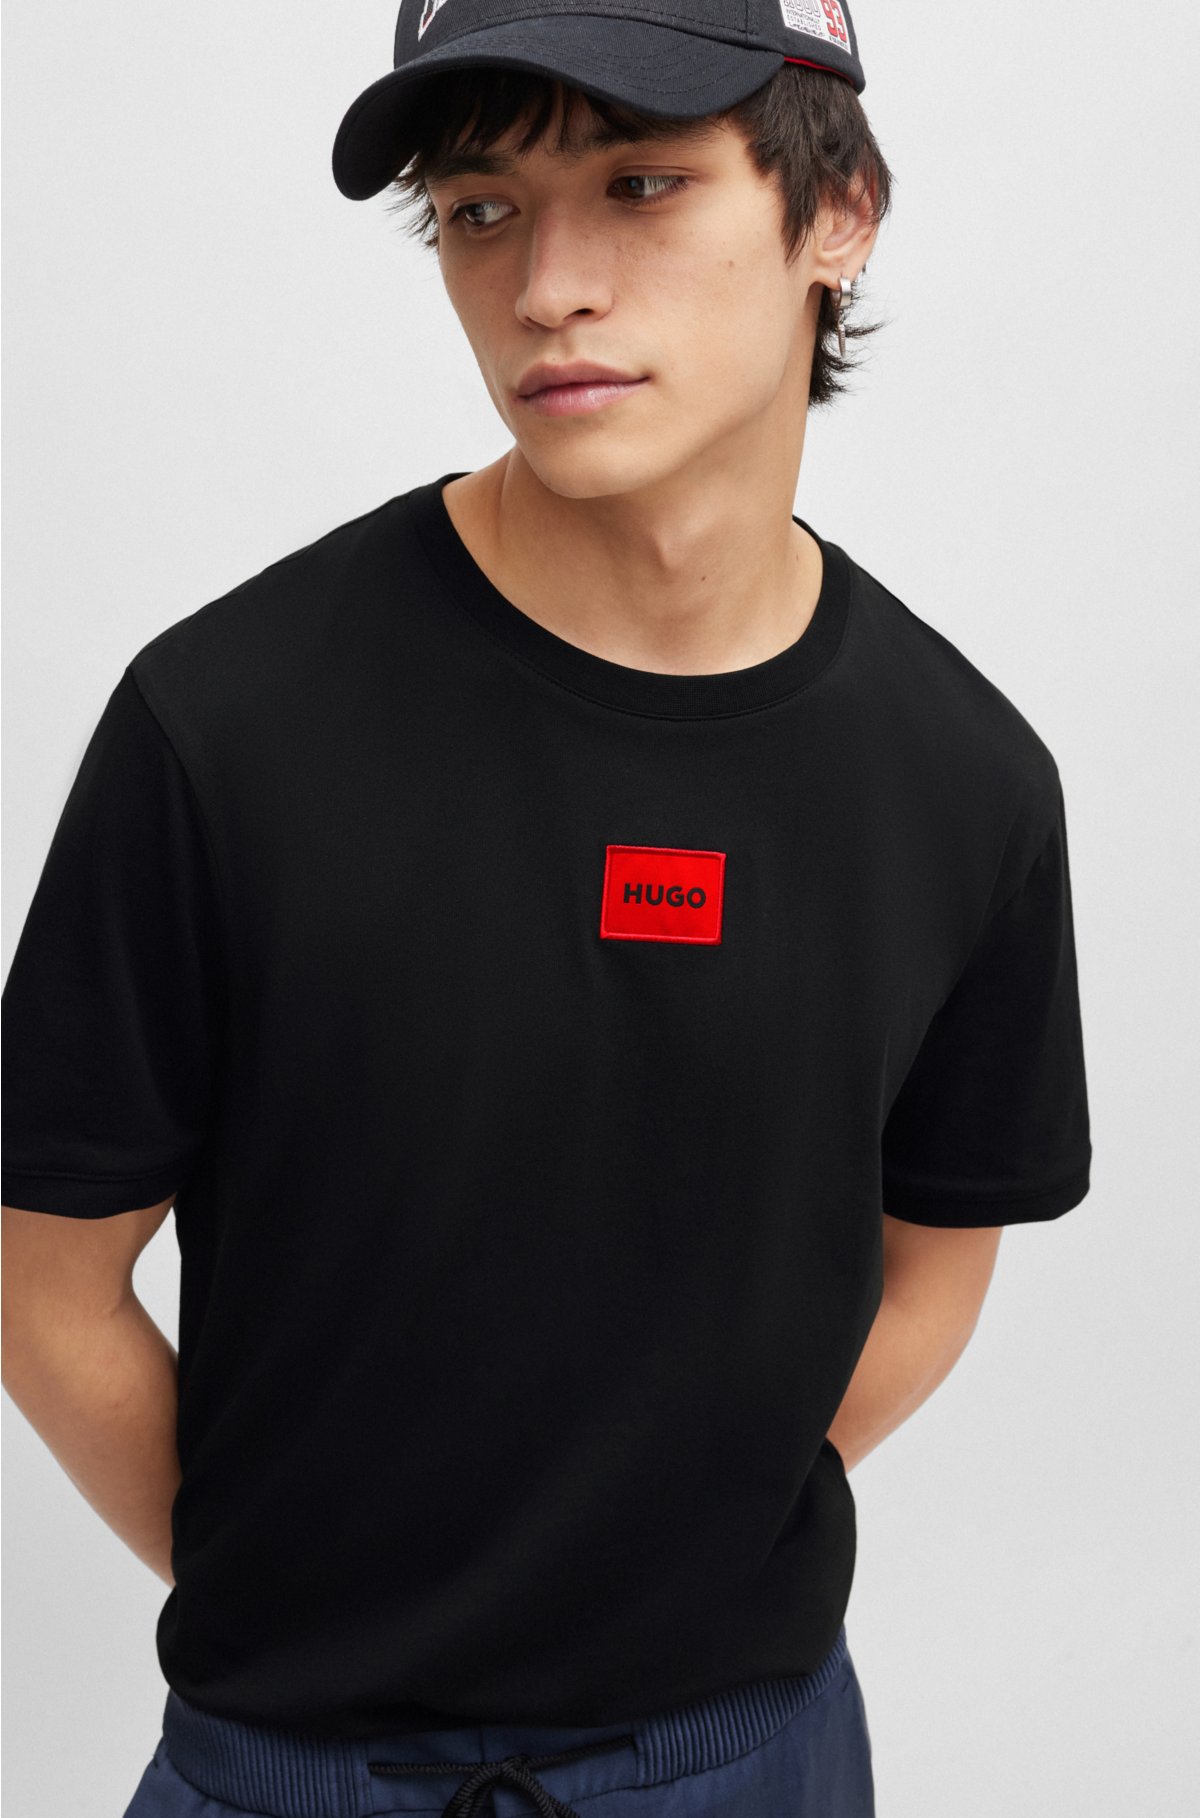 tørre mel Igangværende HUGO - Regular-fit cotton T-shirt with red logo label